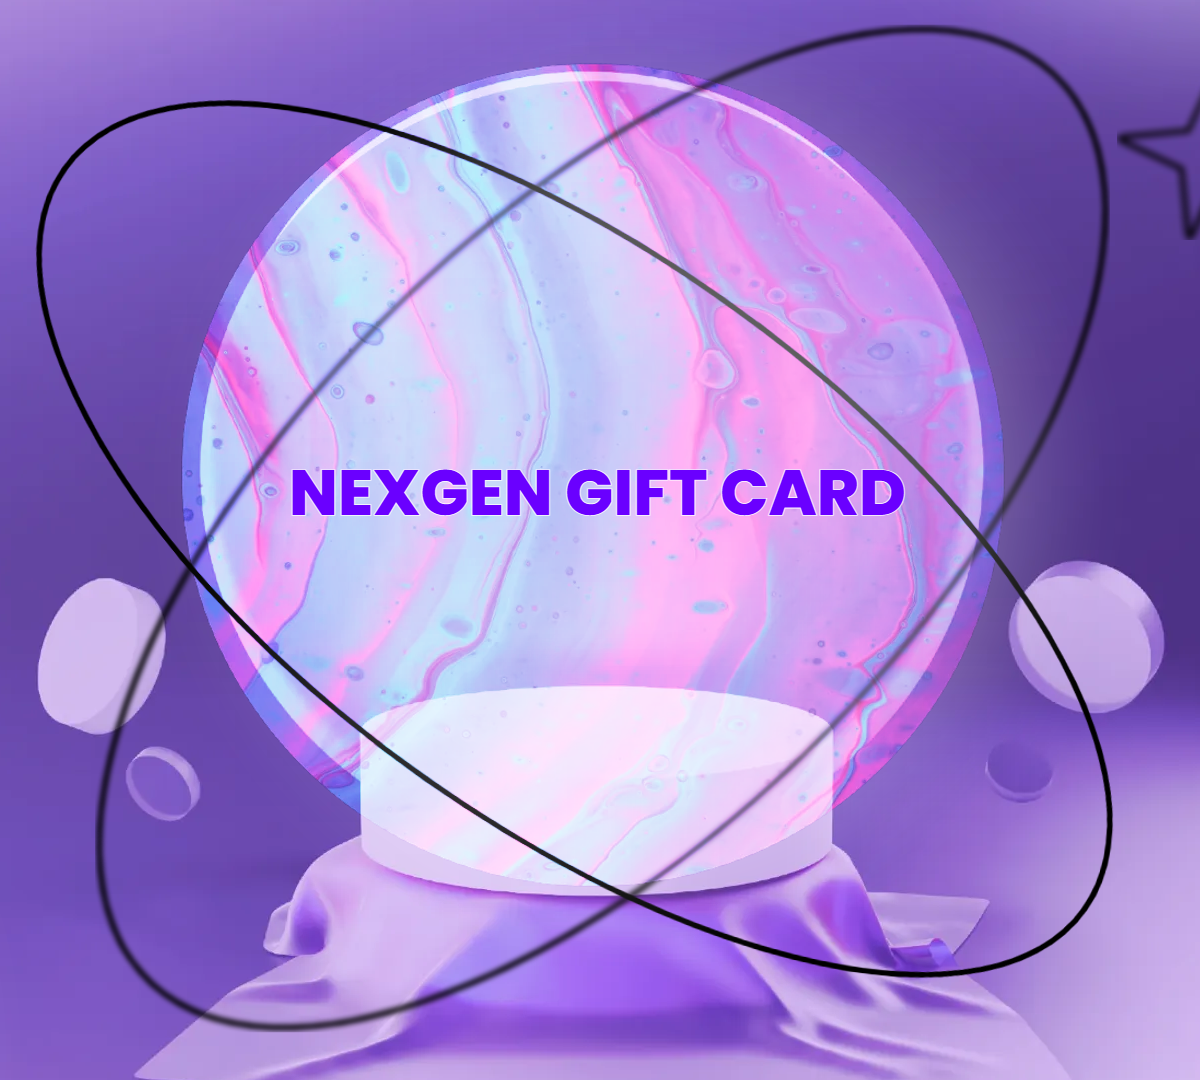 NEXGEN EMF GIFT CARD